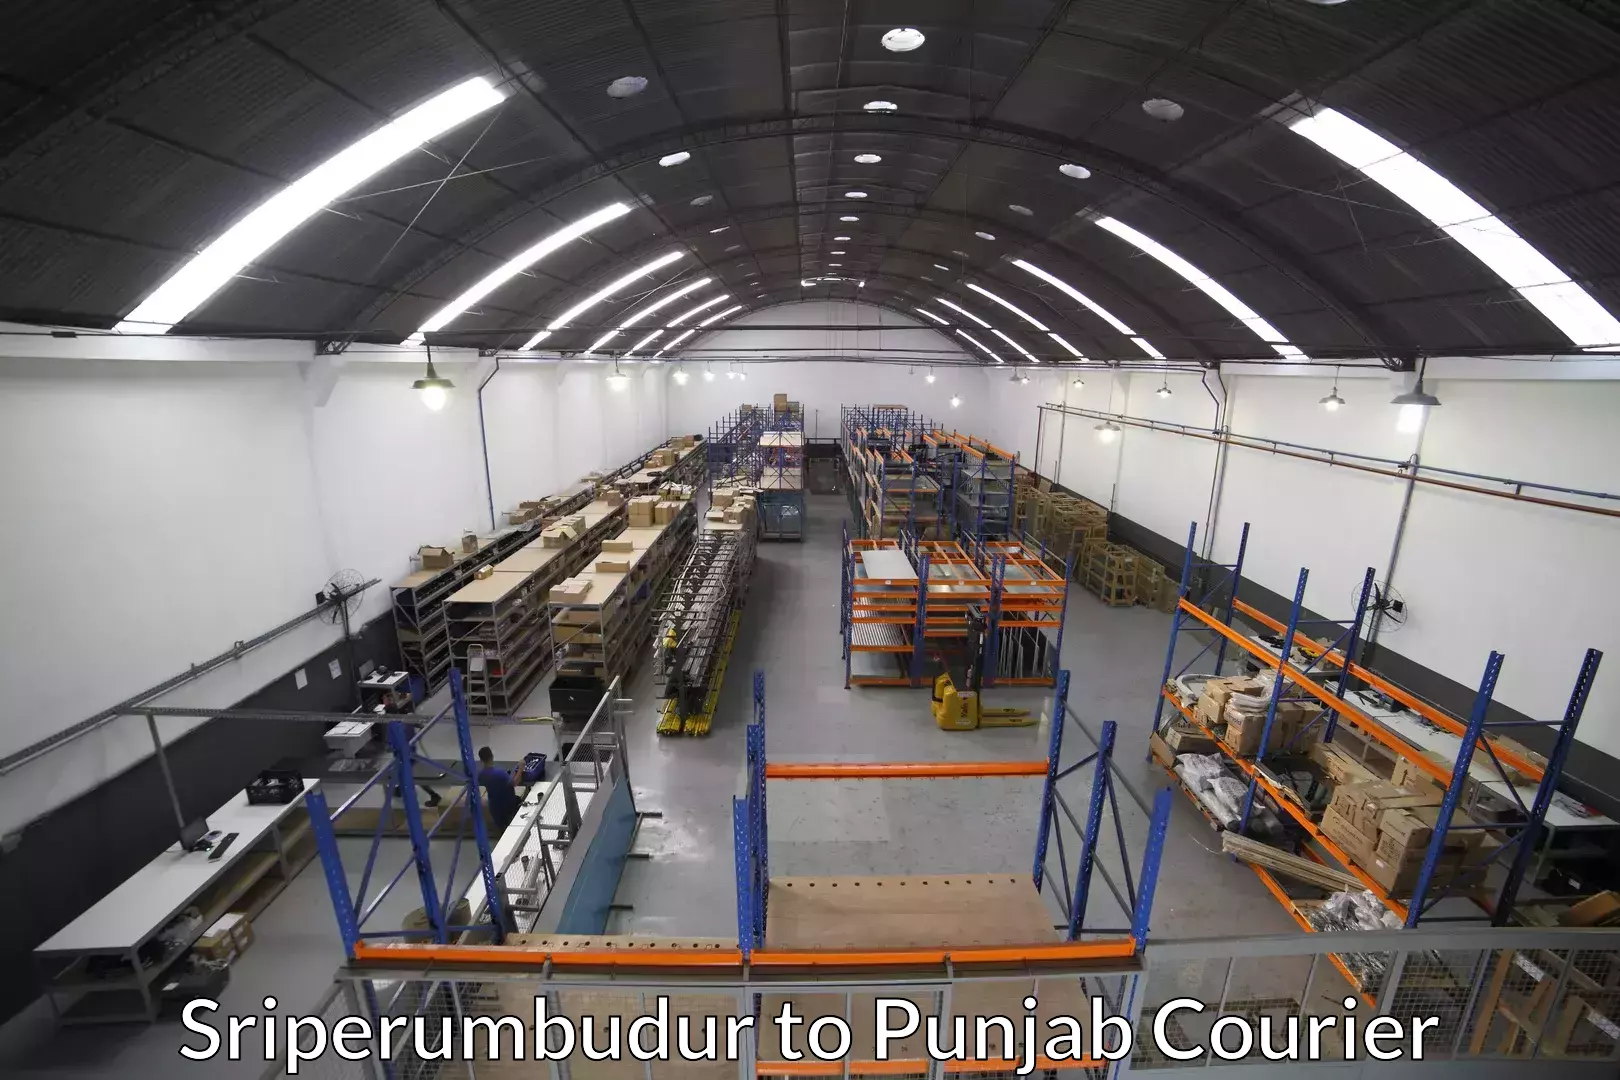 Furniture moving specialists Sriperumbudur to Punjab